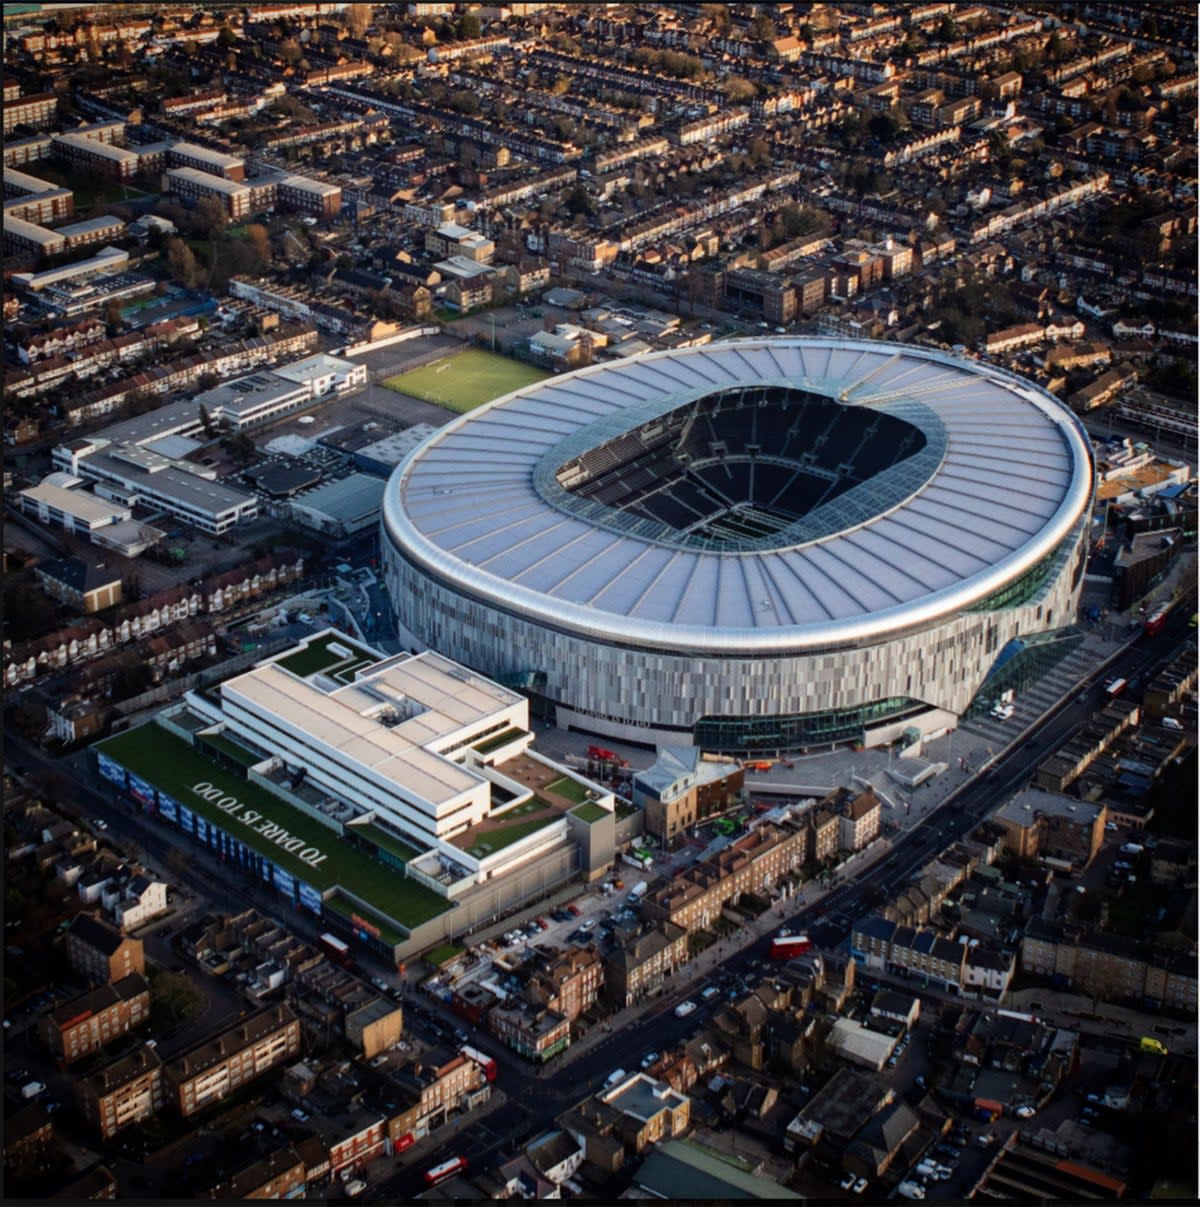 Tottenham stadium